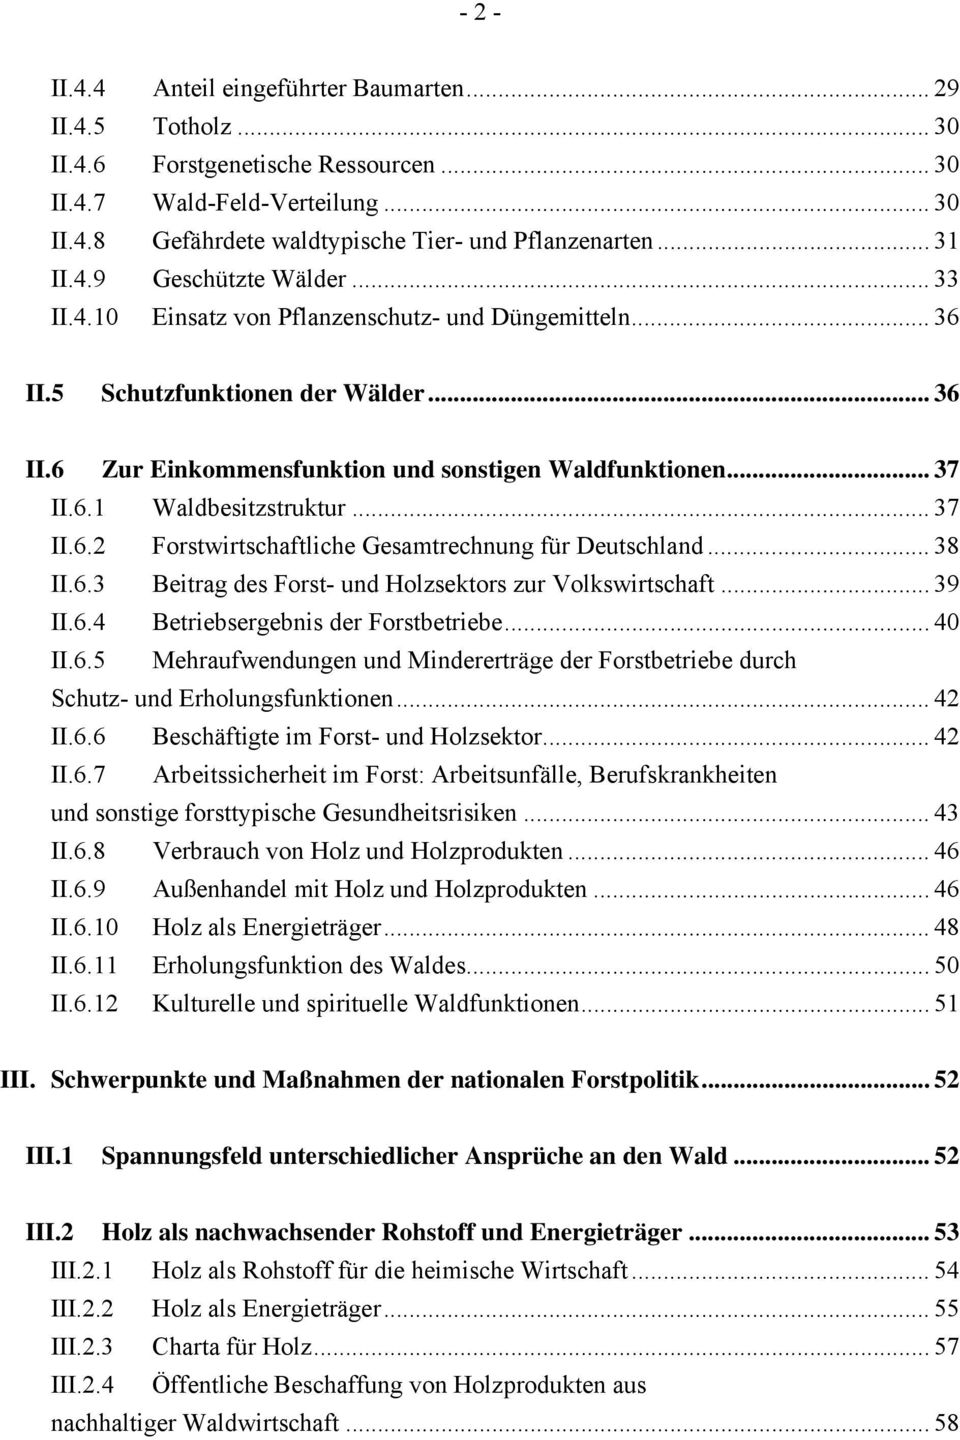 6.1 Waldbesitzstruktur... 37 II.6.2 Forstwirtschaftliche Gesamtrechnung für Deutschland... 38 II.6.3 Beitrag des Forst- und Holzsektors zur Volkswirtschaft... 39 II.6.4 Betriebsergebnis der Forstbetriebe.